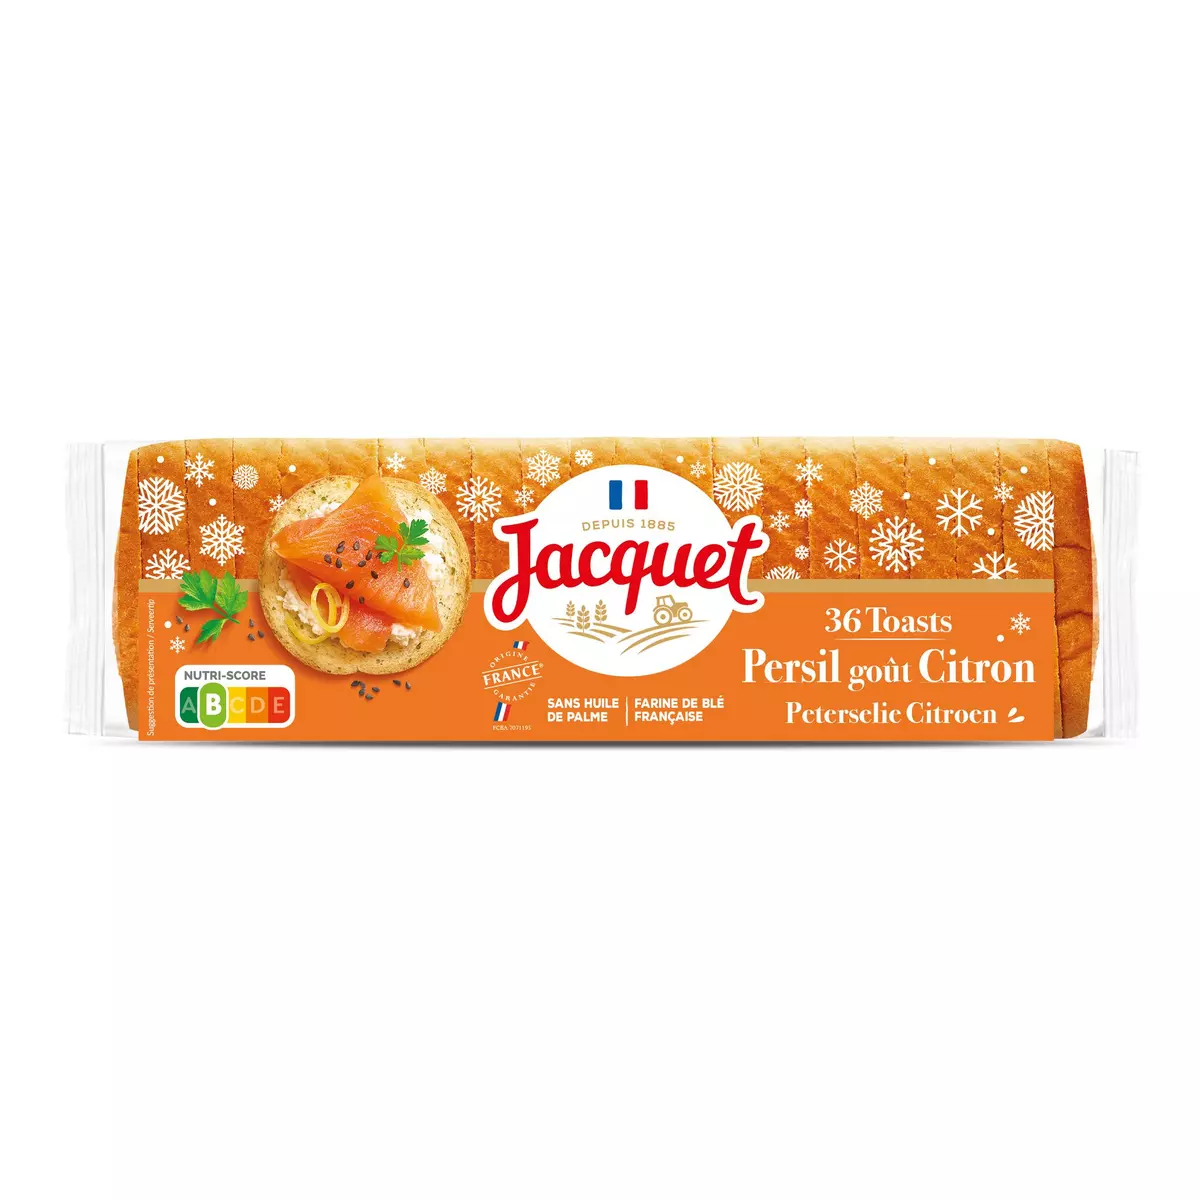 JACQUET Toasts persil goût citron spécial saumon 36 tranches 250g